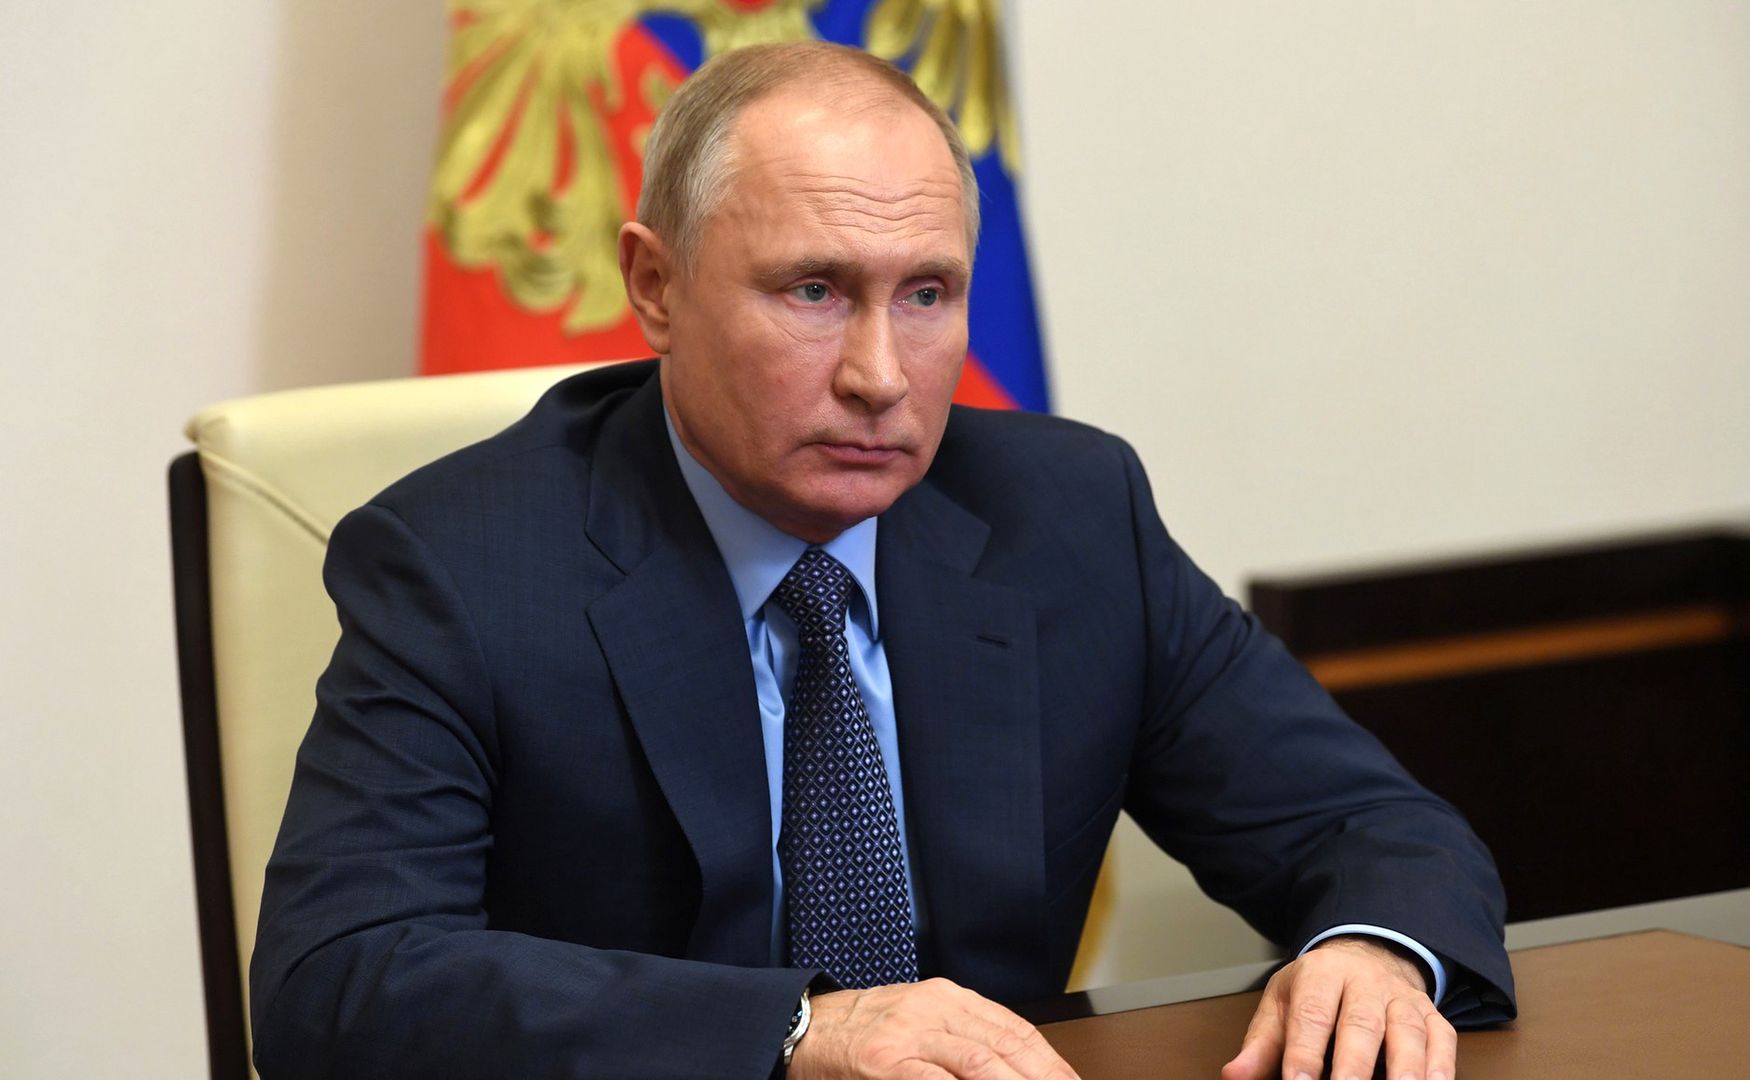 Zmiany w biurze Putina. Służby bezpieczeństwa reagują